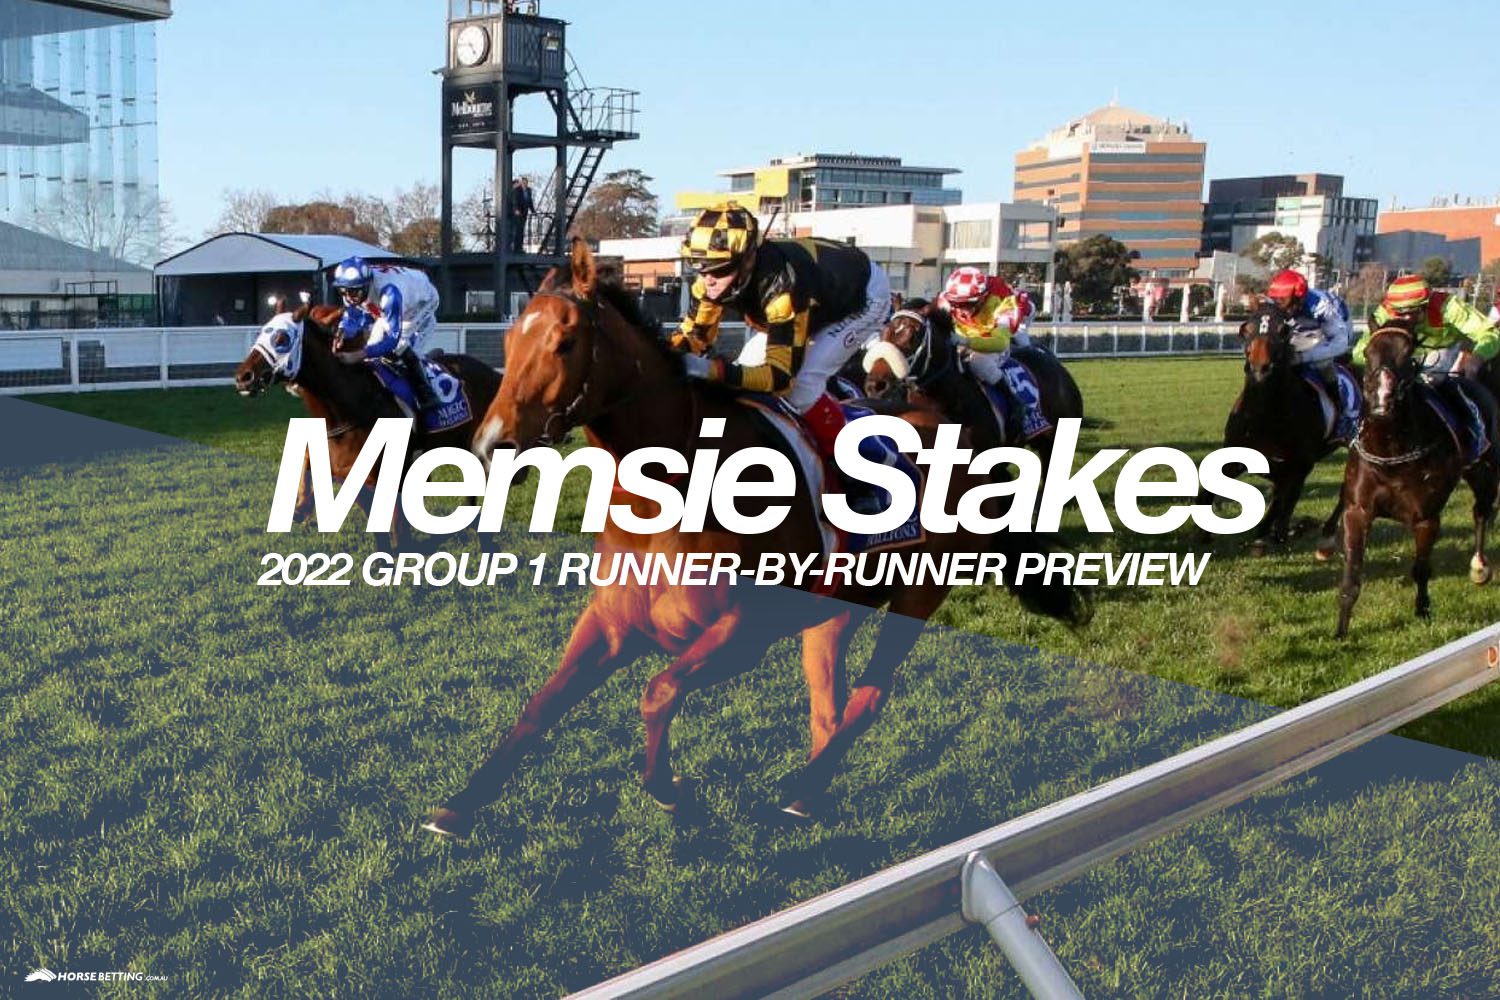 Memsie Stakes